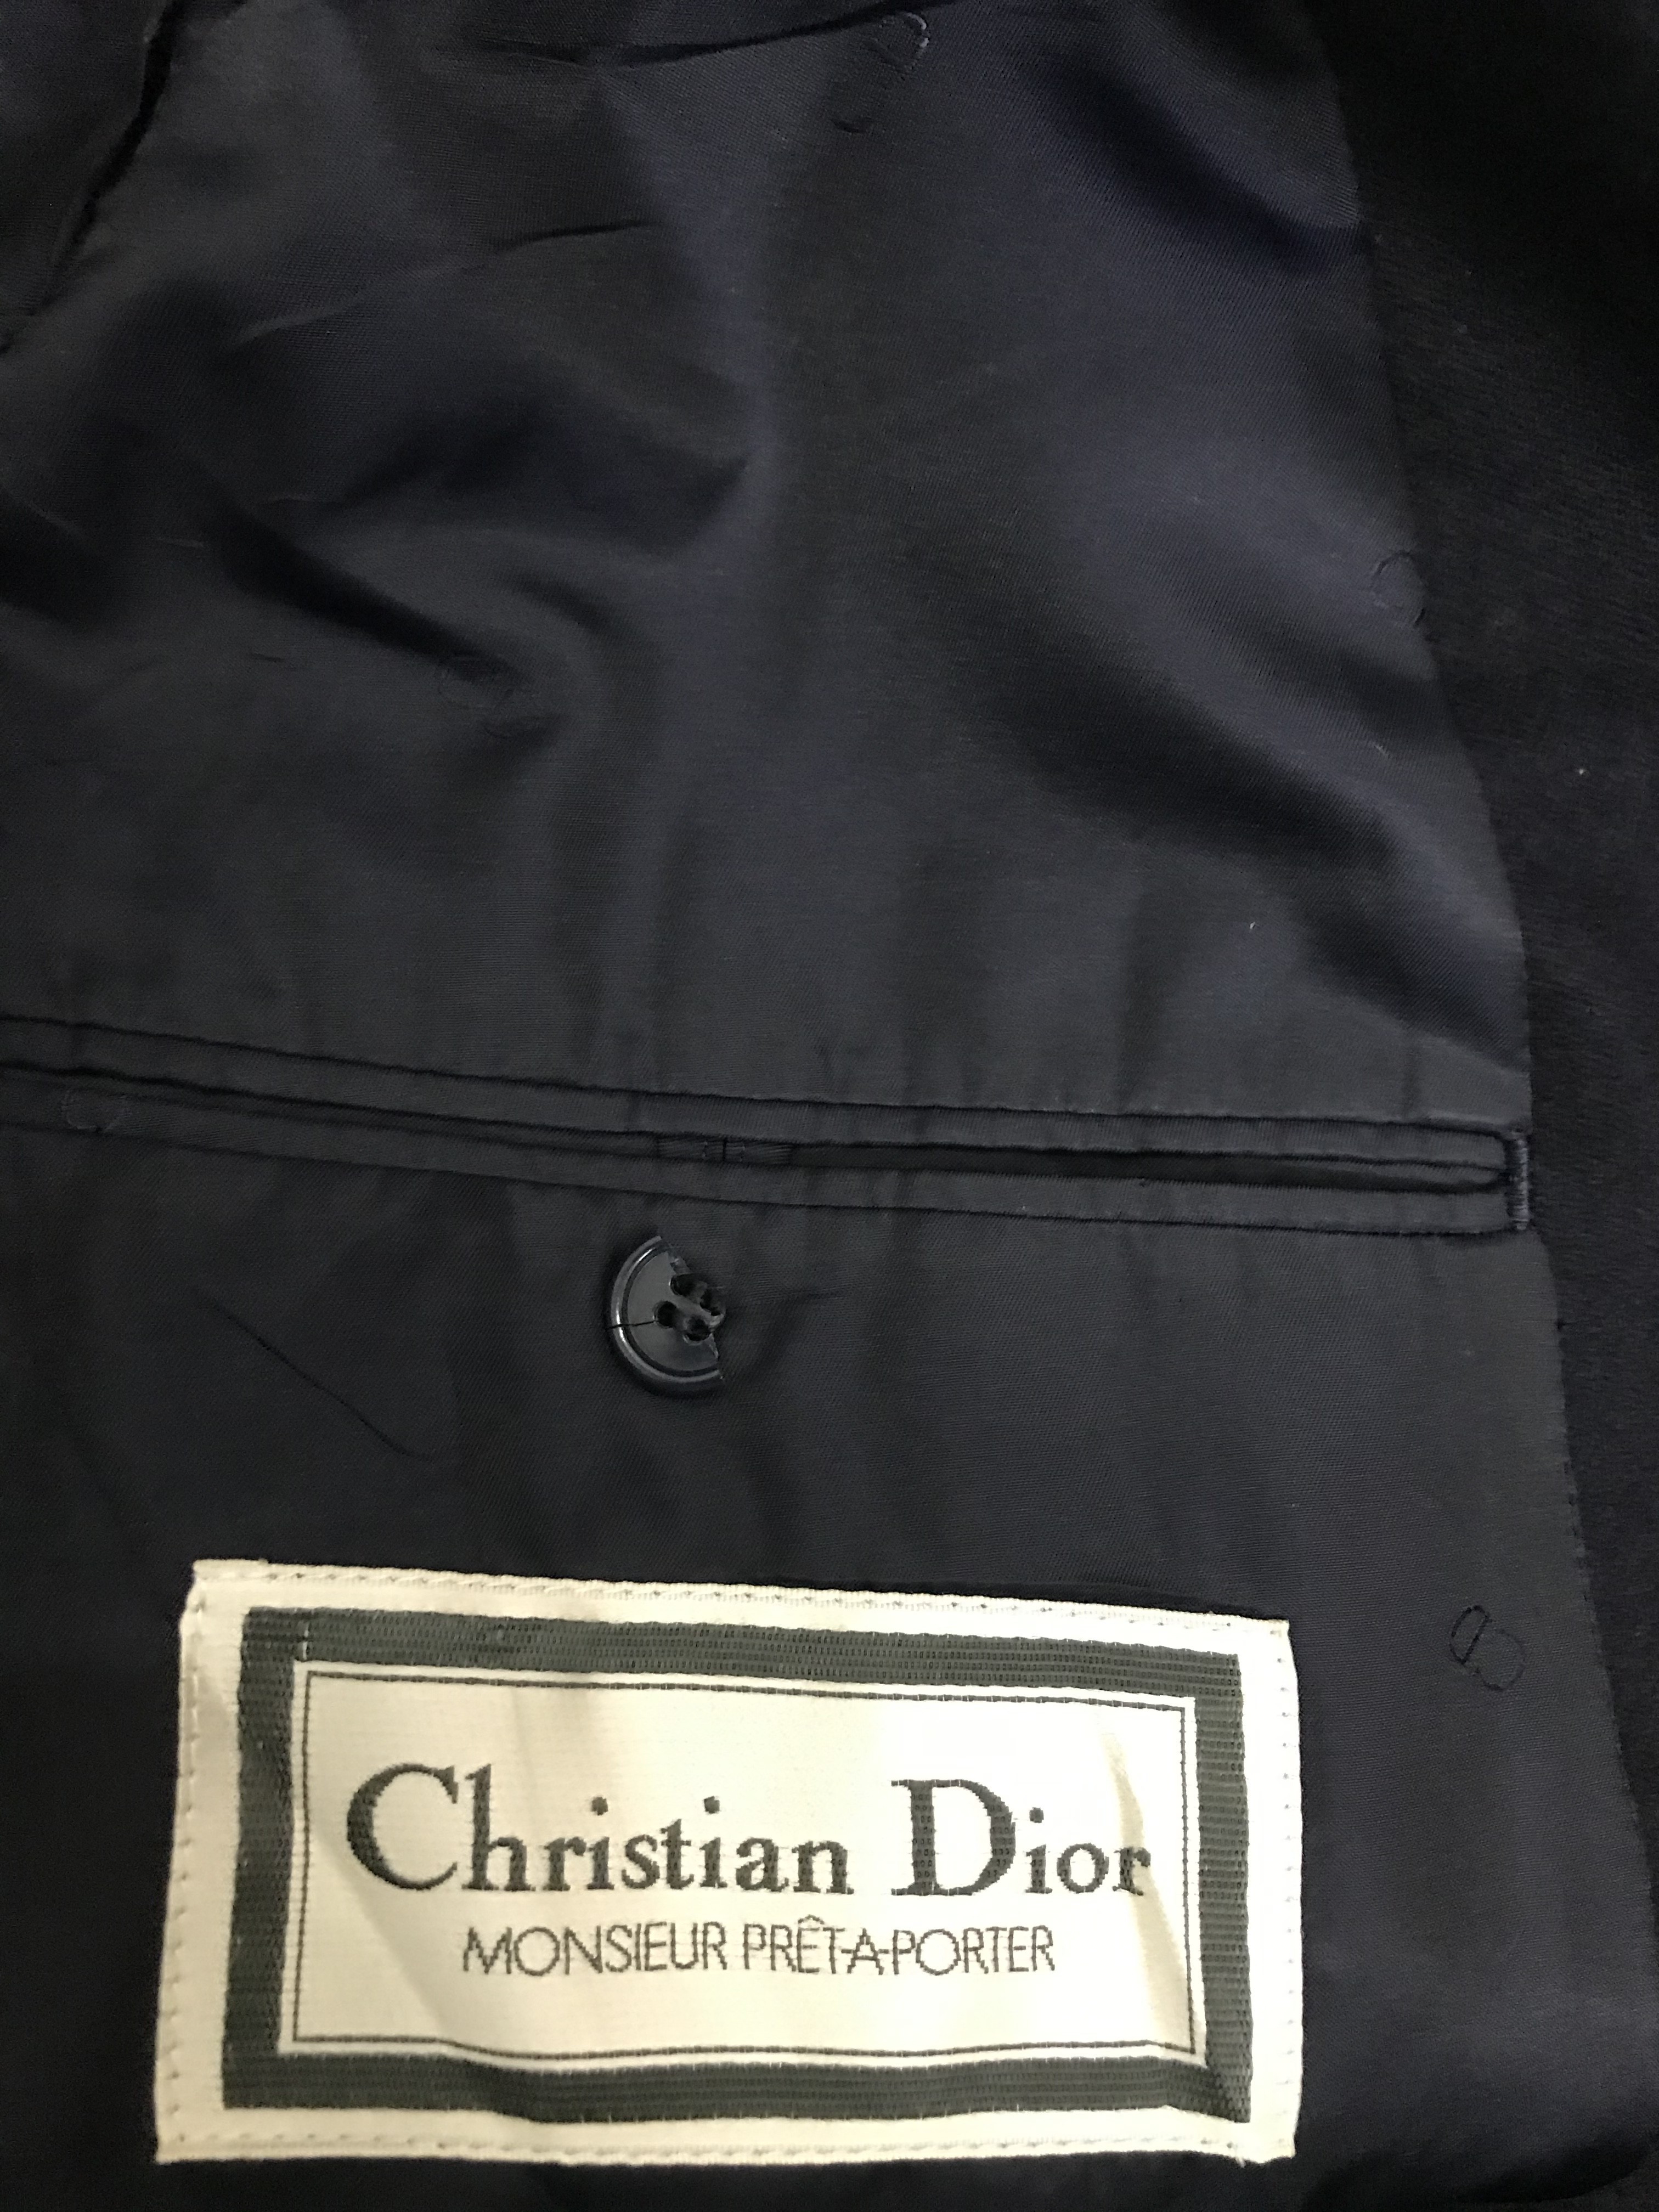 Christian Dior Monsieur - Christian Dior Monsieur Pret-A-Porter - 8